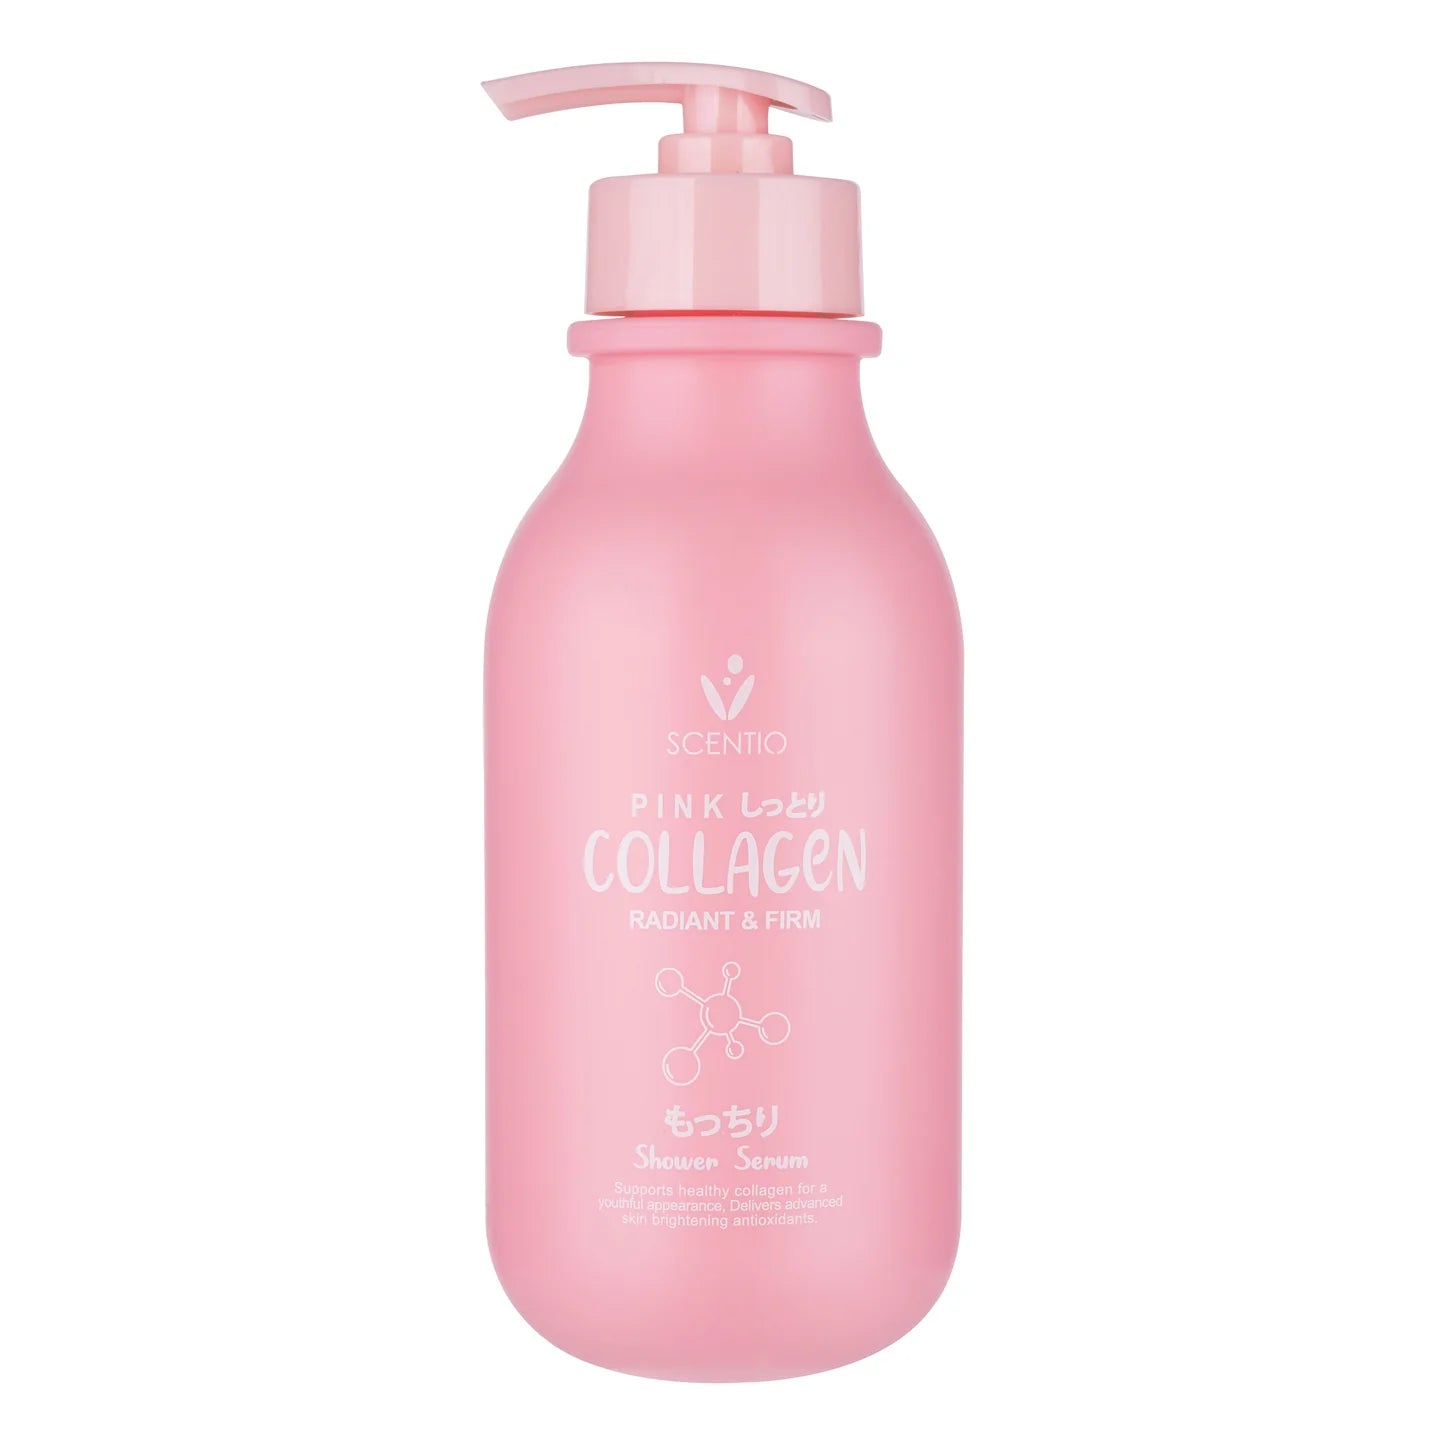 Beauty Buffet Scentio Pink Collagen Radiant & Firm Shower Serum Bath Cream Body Wash 350ml